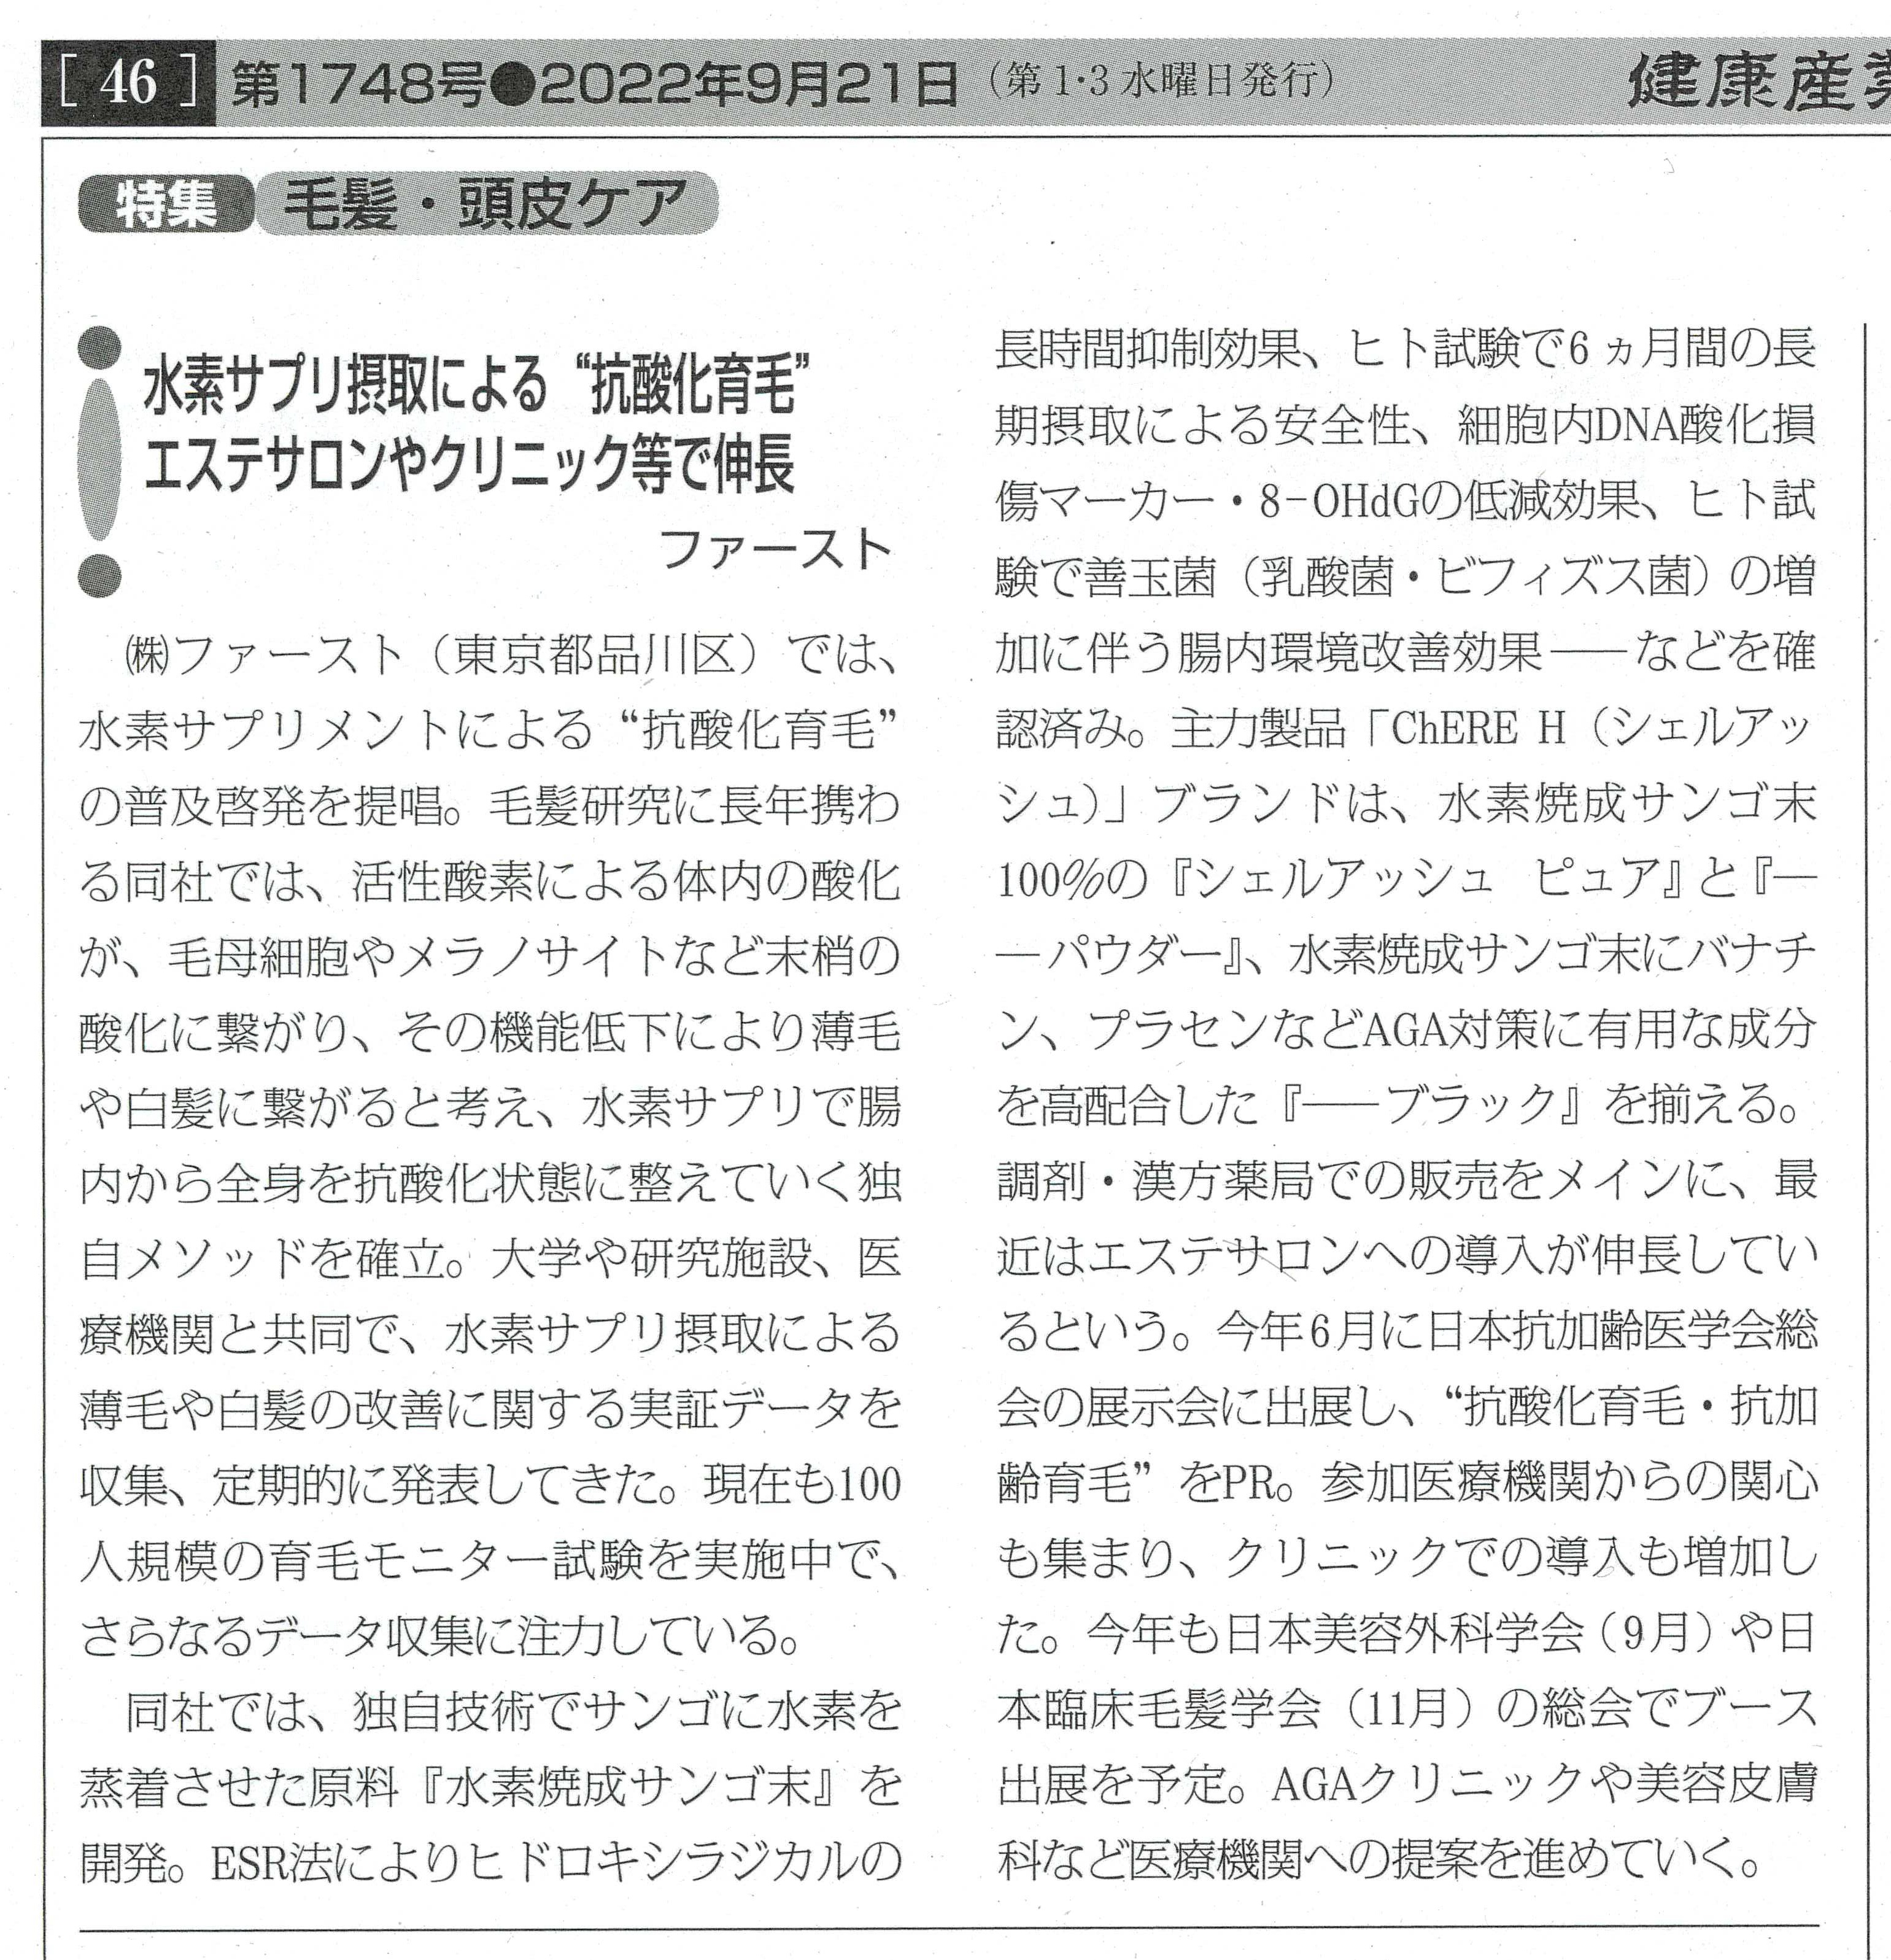 健康産業新聞記事コピー_220921_トリム.jpg